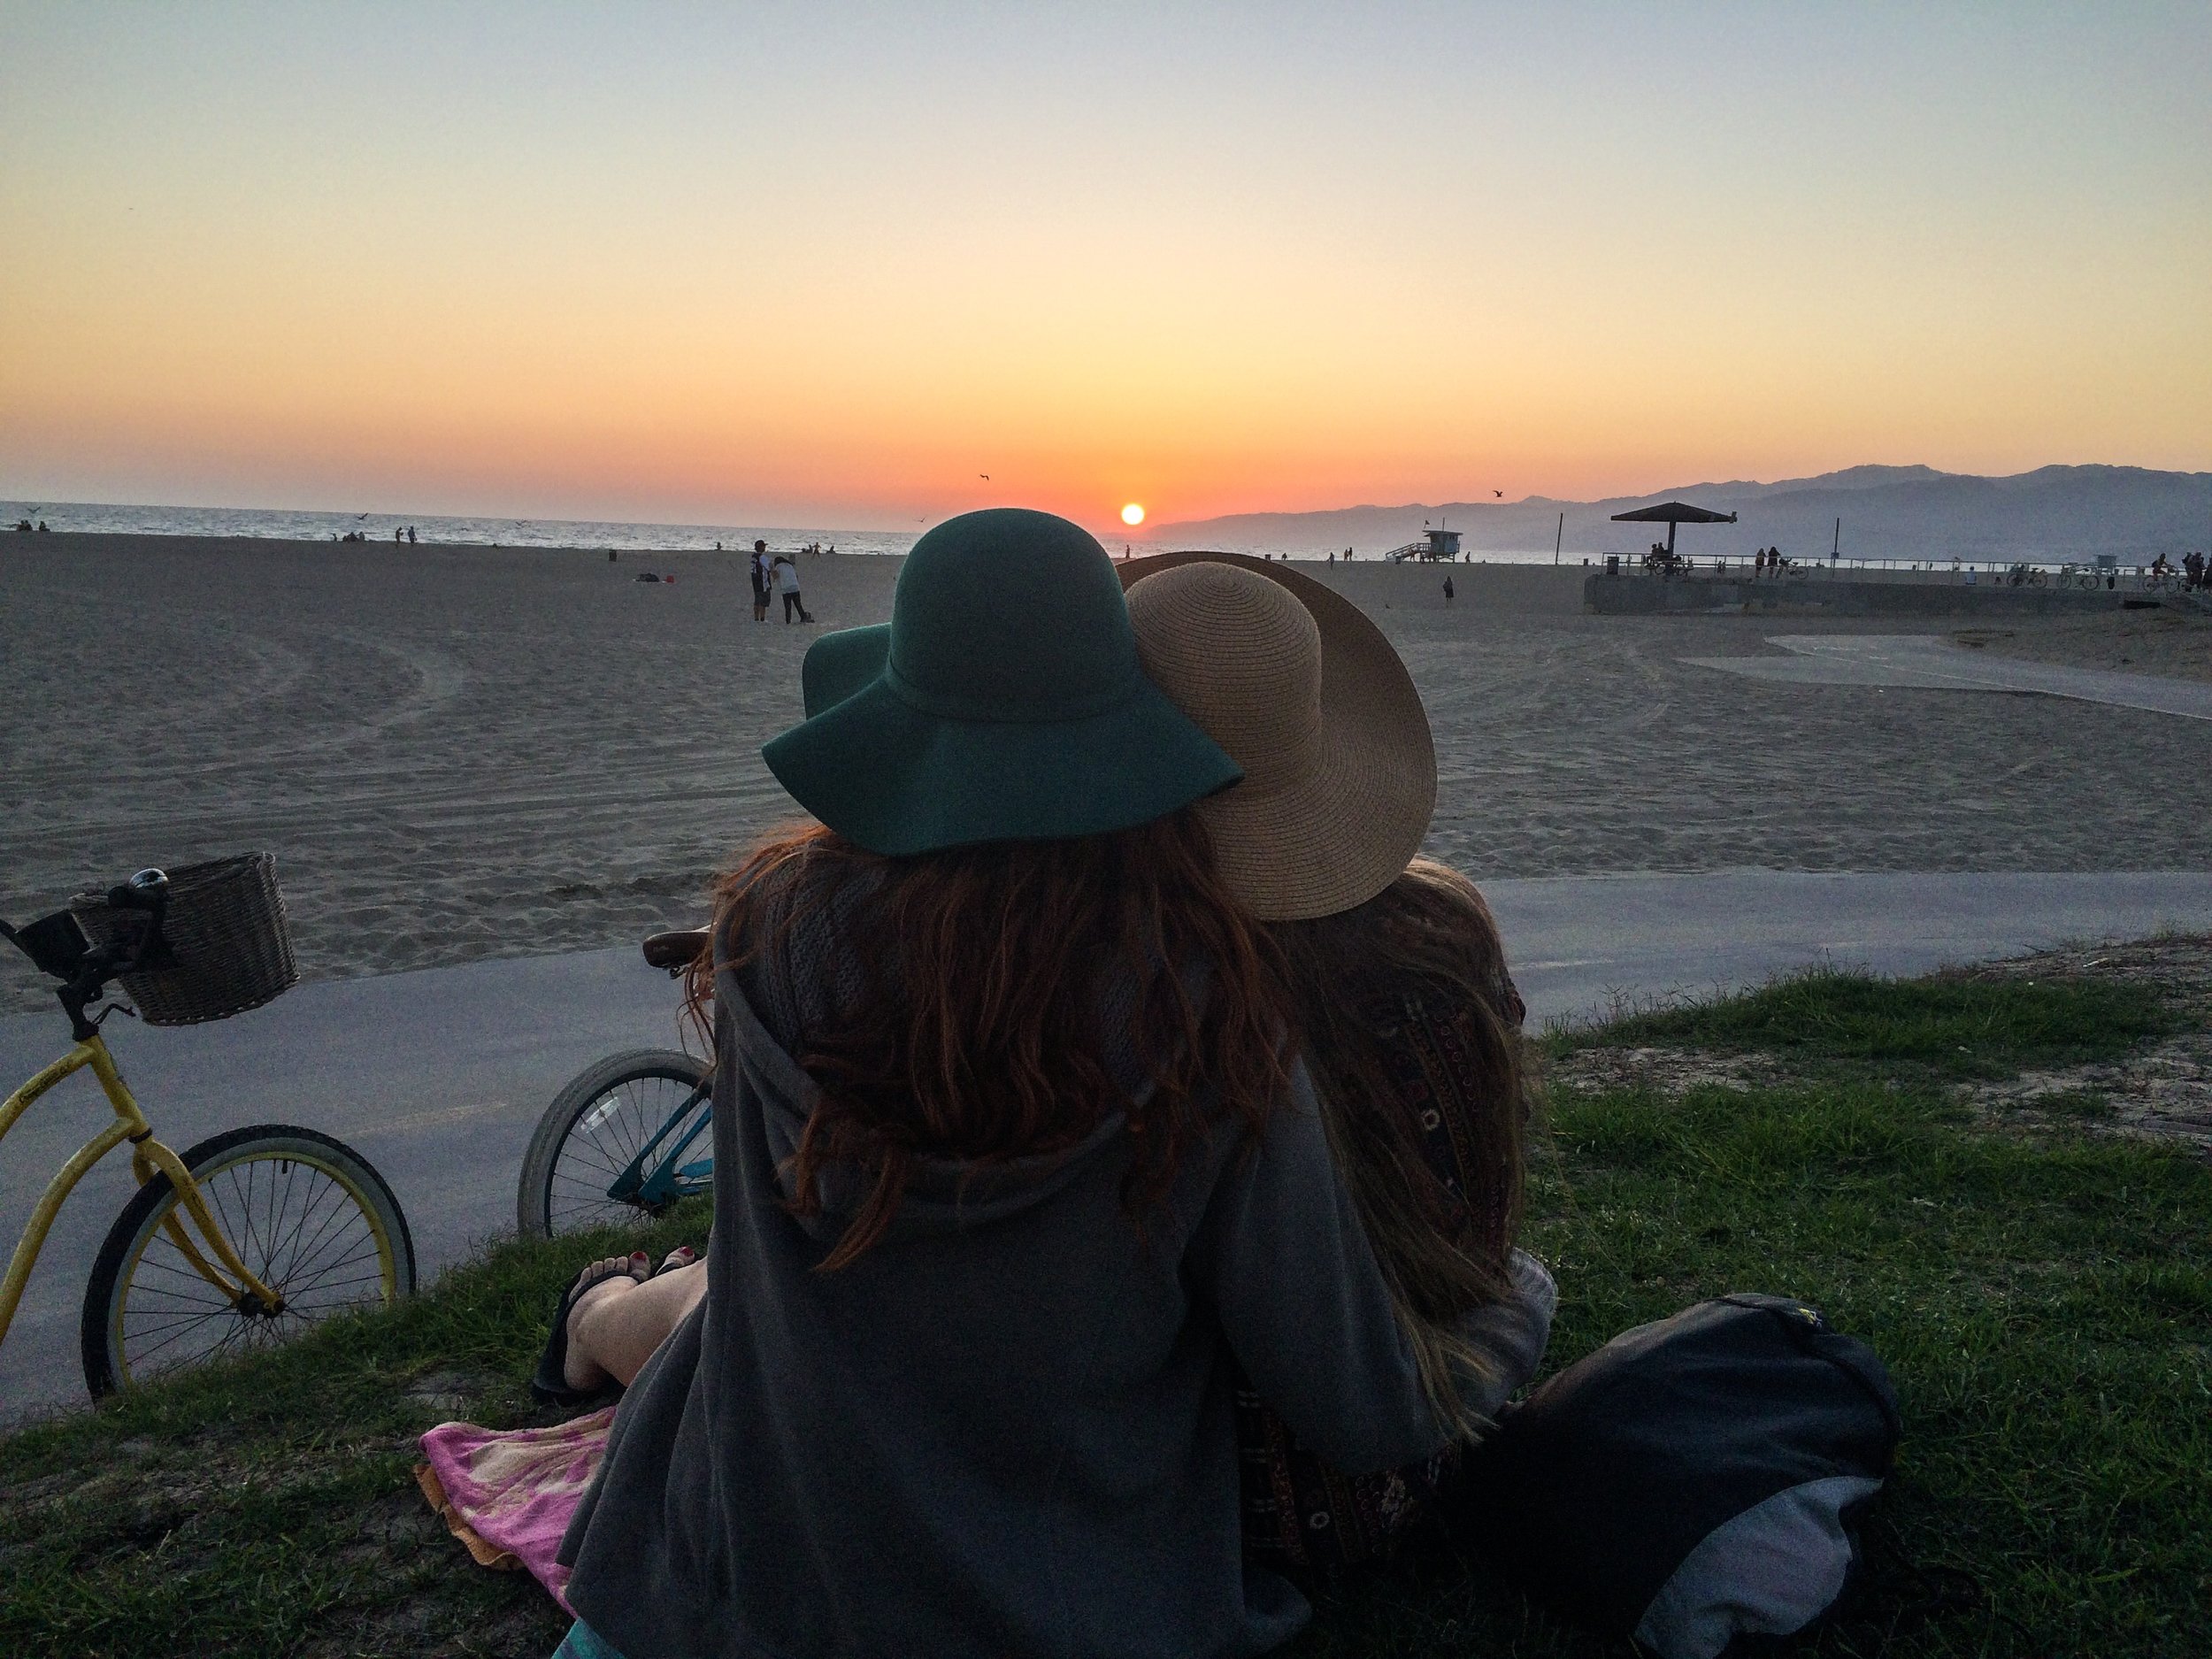  Venice Beach in Los Angeles, CA 